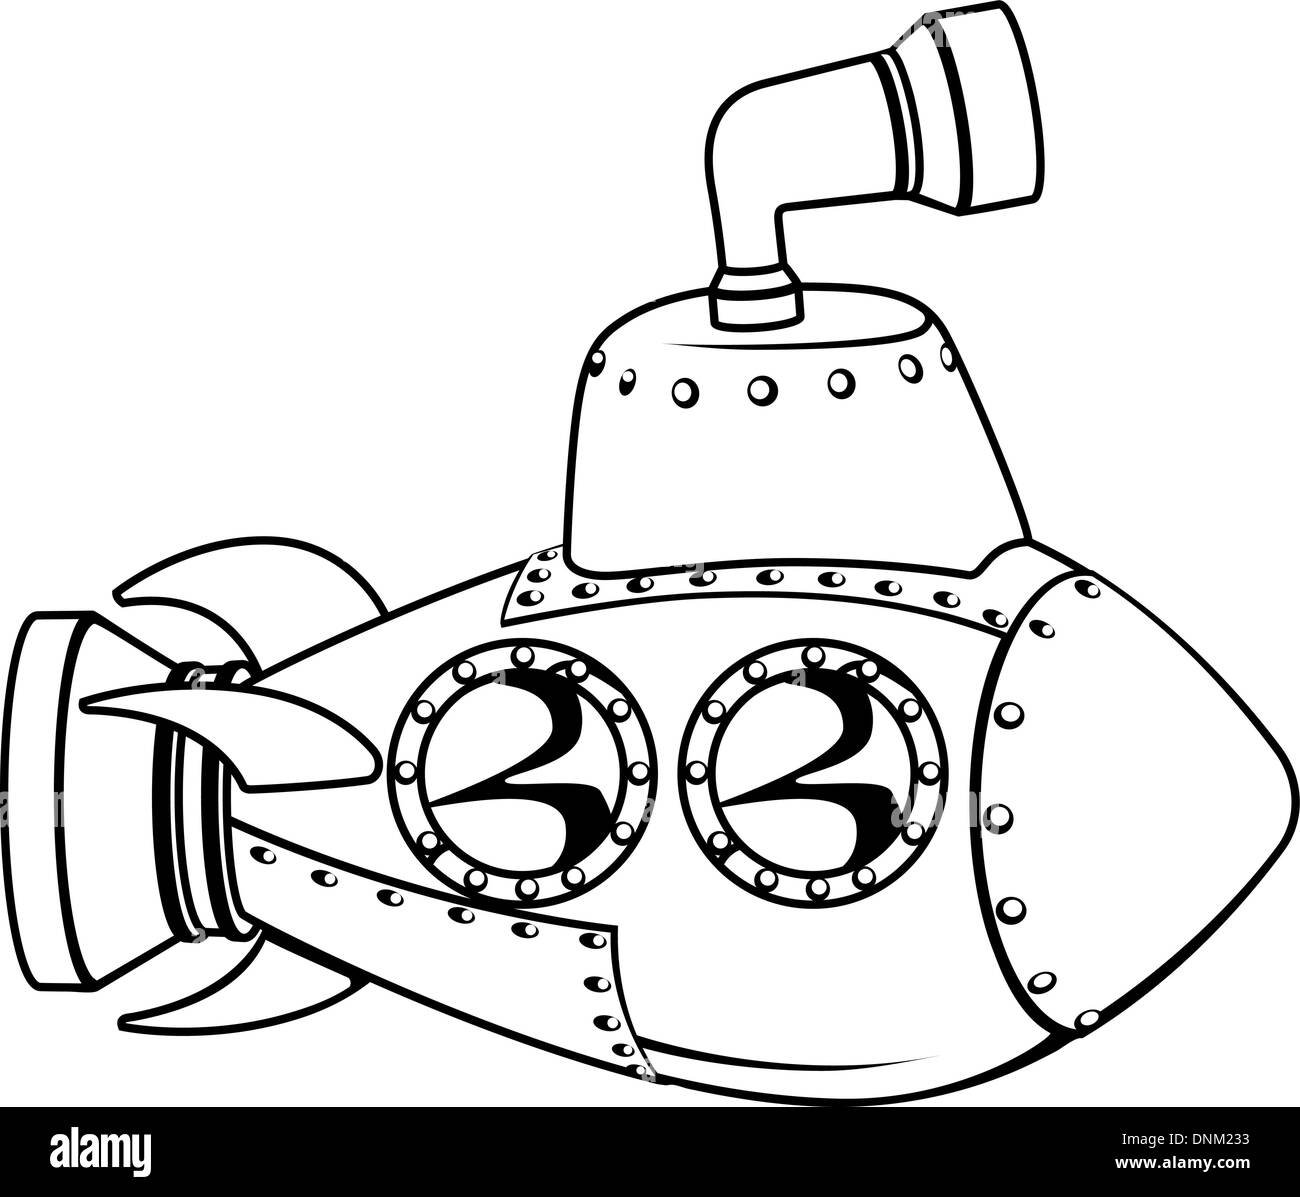 Ilustración de una caricatura submarino esquema en blanco y negro Ilustración del Vector